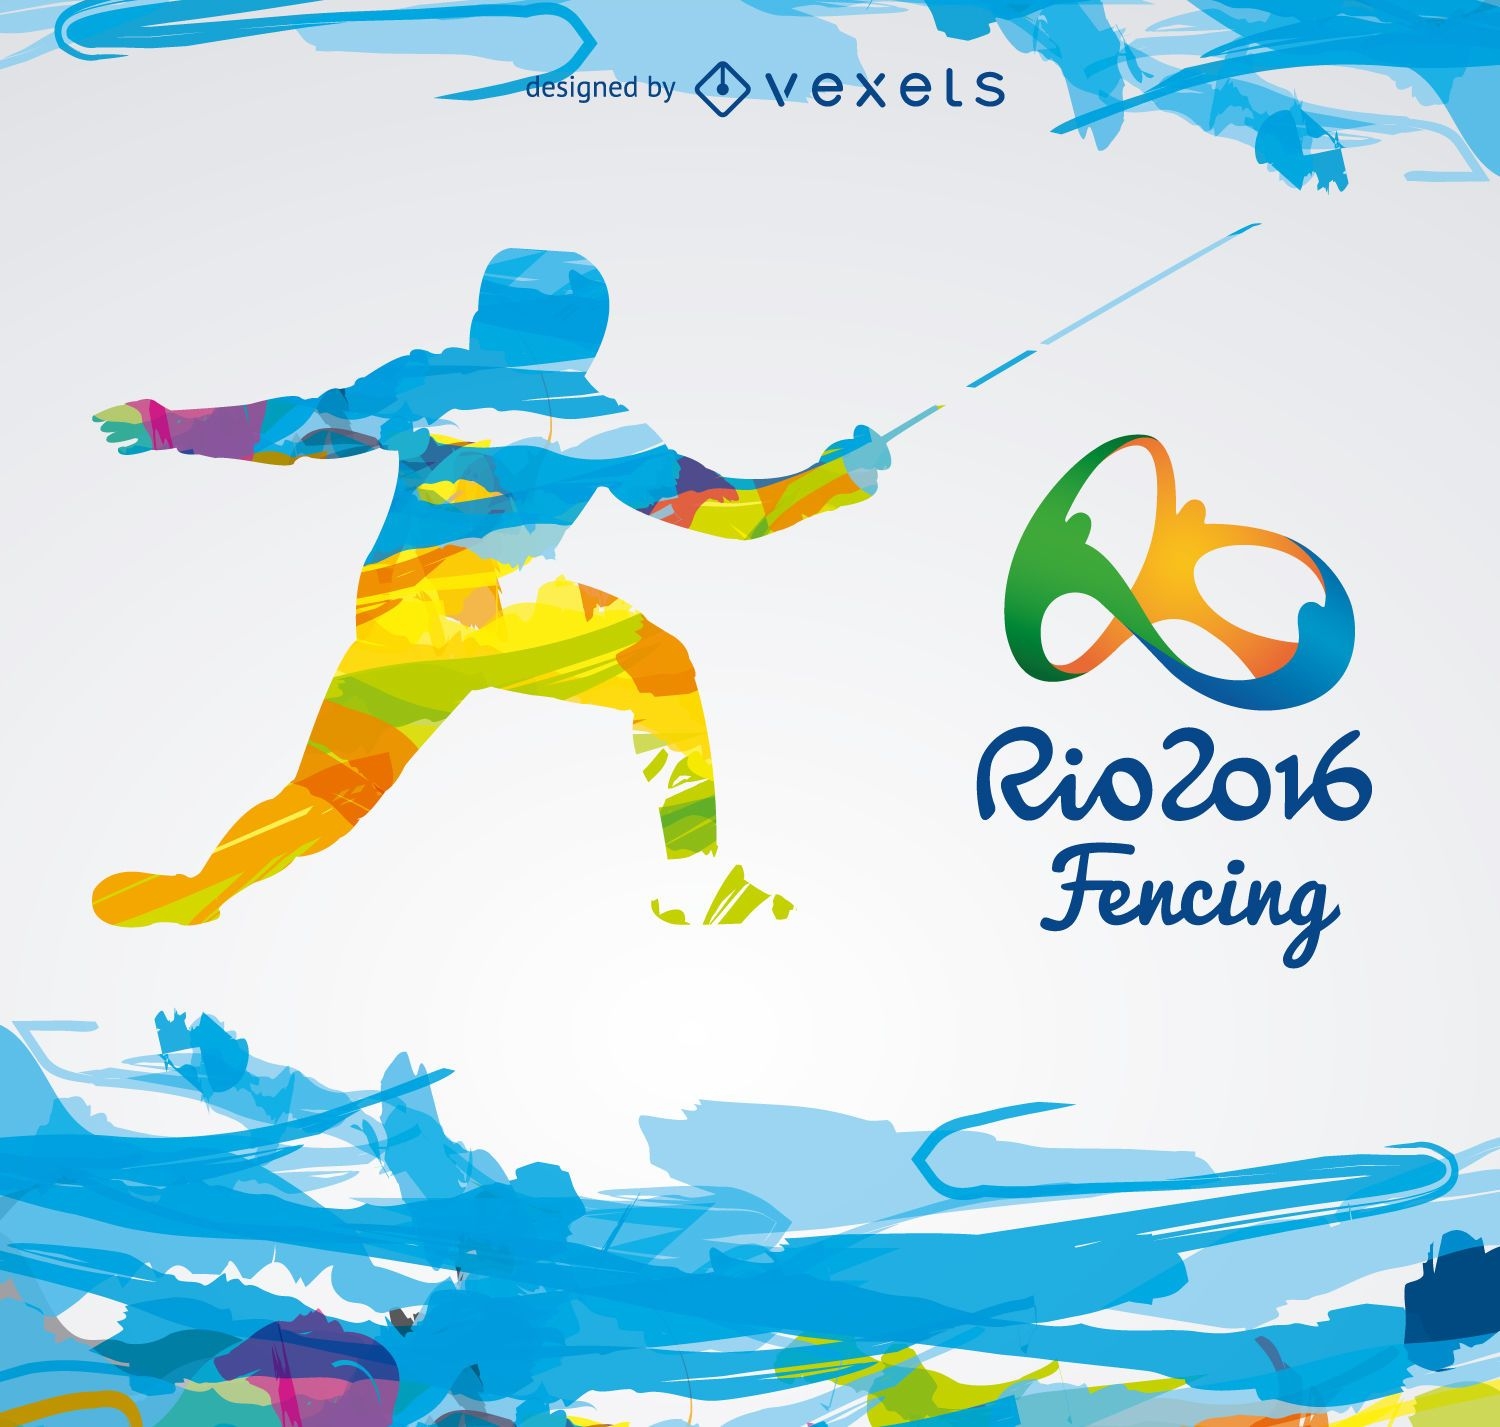 Juegos Ol?mpicos Rio 2016-Esgrima